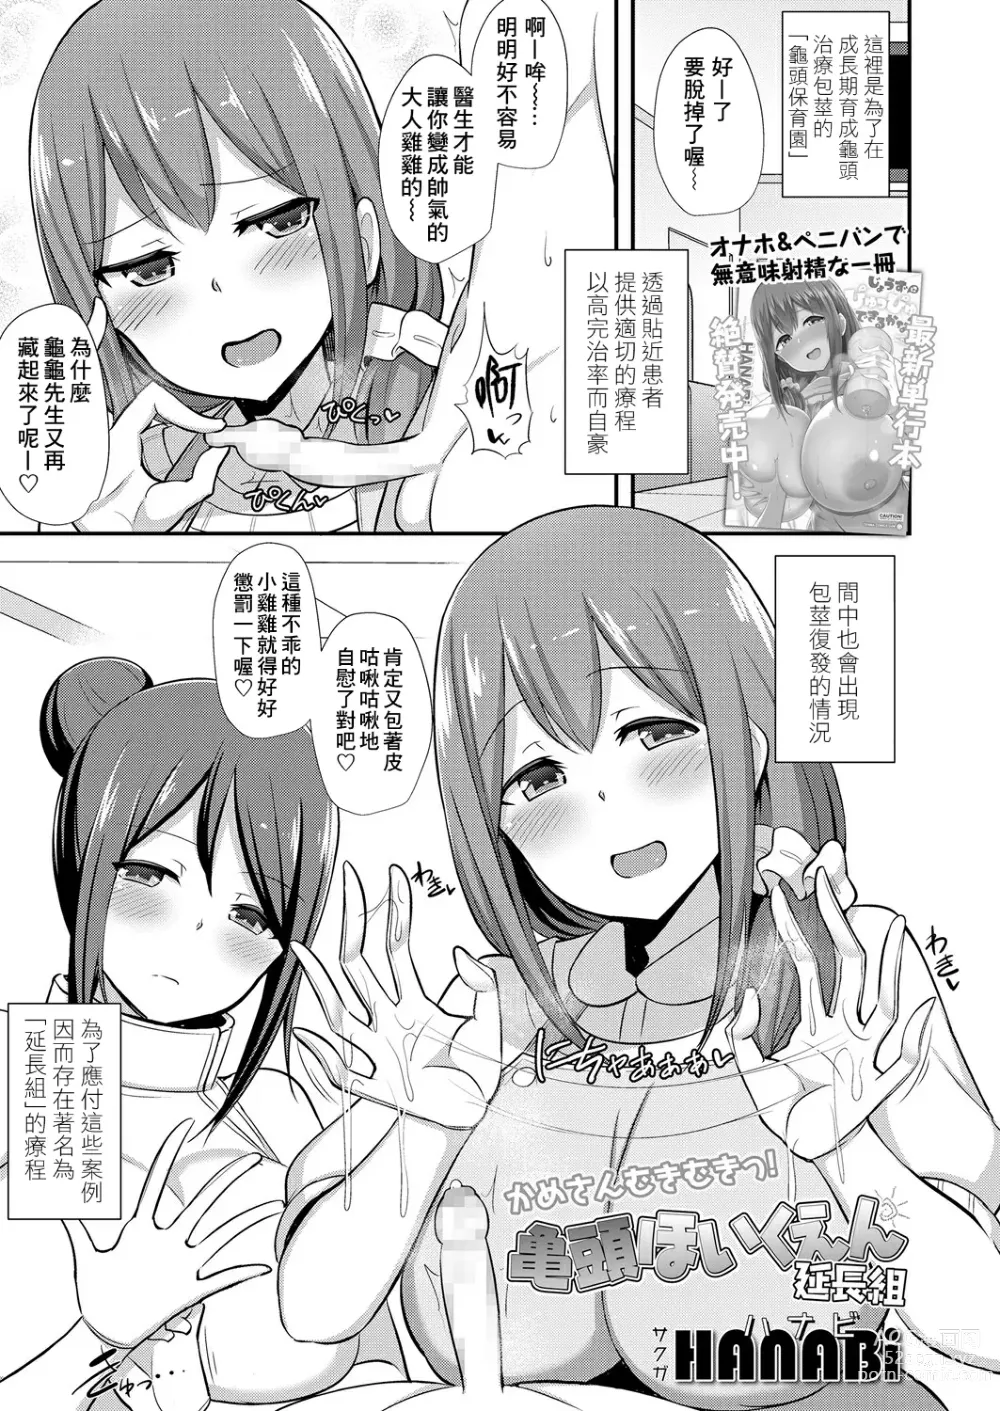 Page 1 of manga Kitou Hoikuen Enchougumi